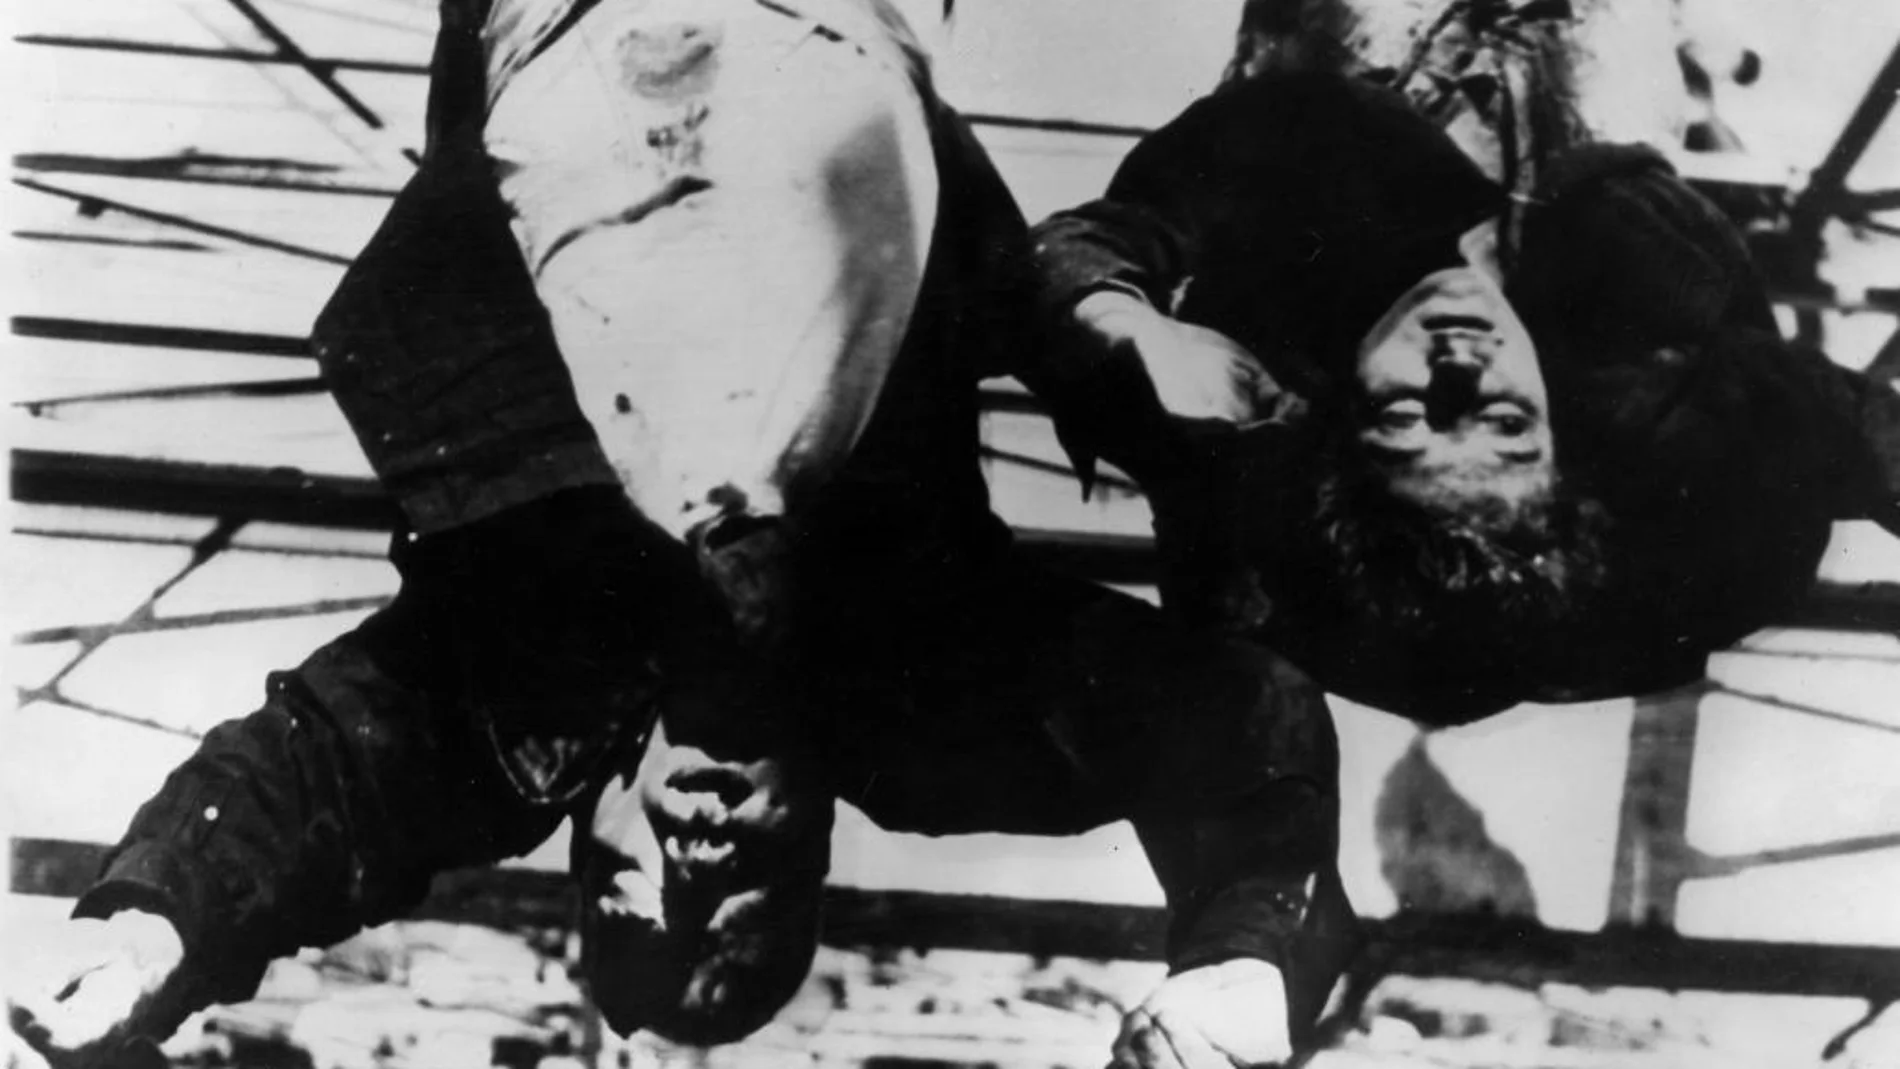 Imagen datada en 29 de abril de 1945, que muestra los cuerpos ajusticiados de Benito Mussolini y su amante, Clara Petacci